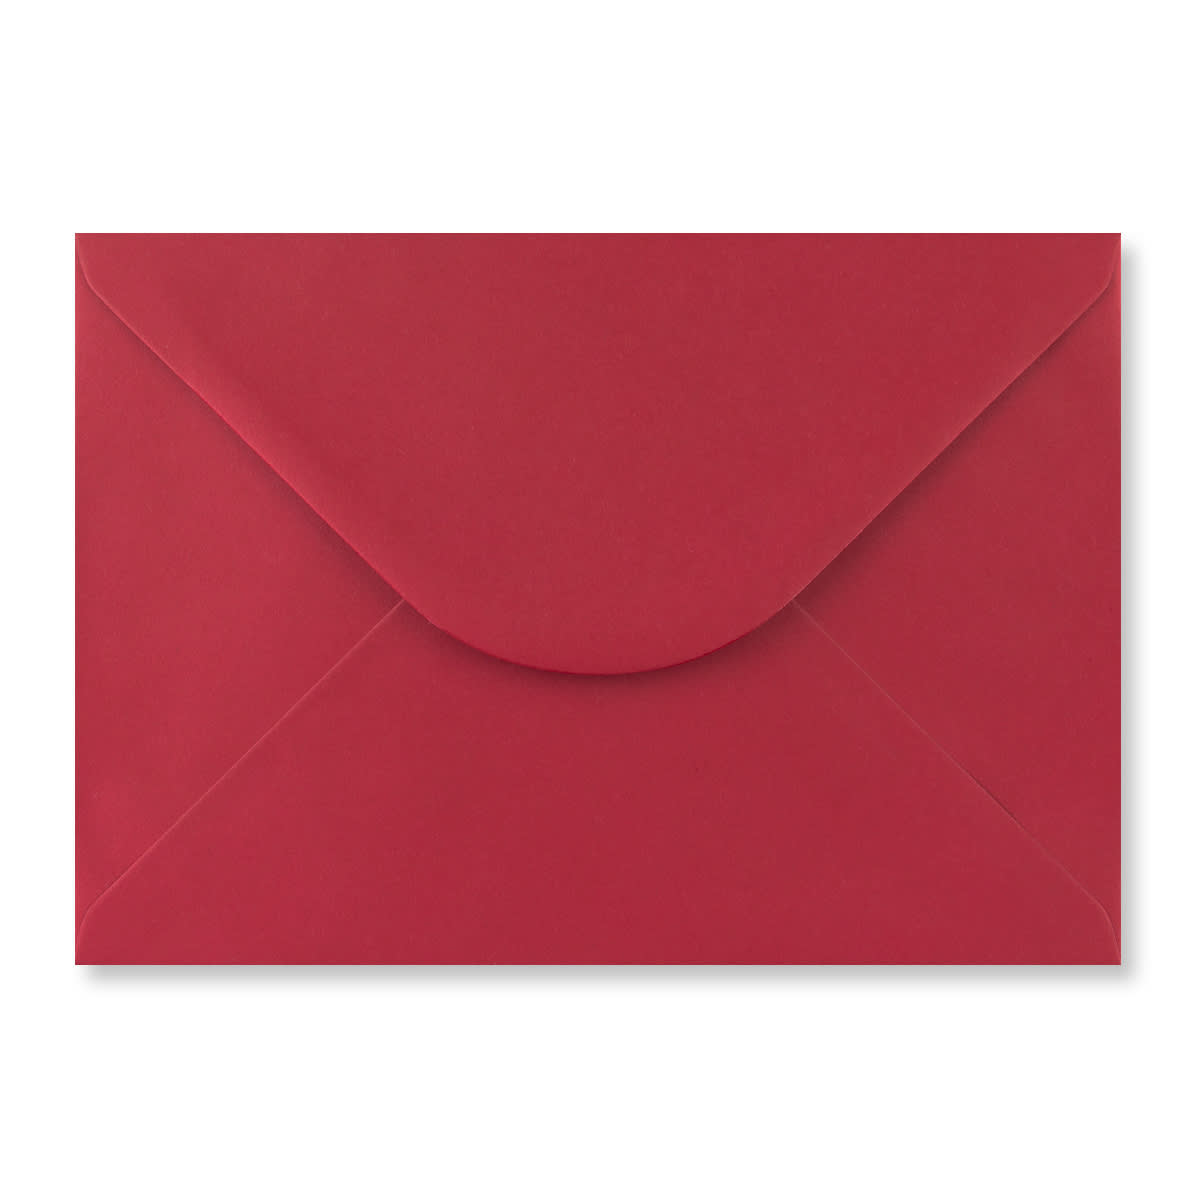 Scarlet Red 165 x 235mm Envelopes 100gsm